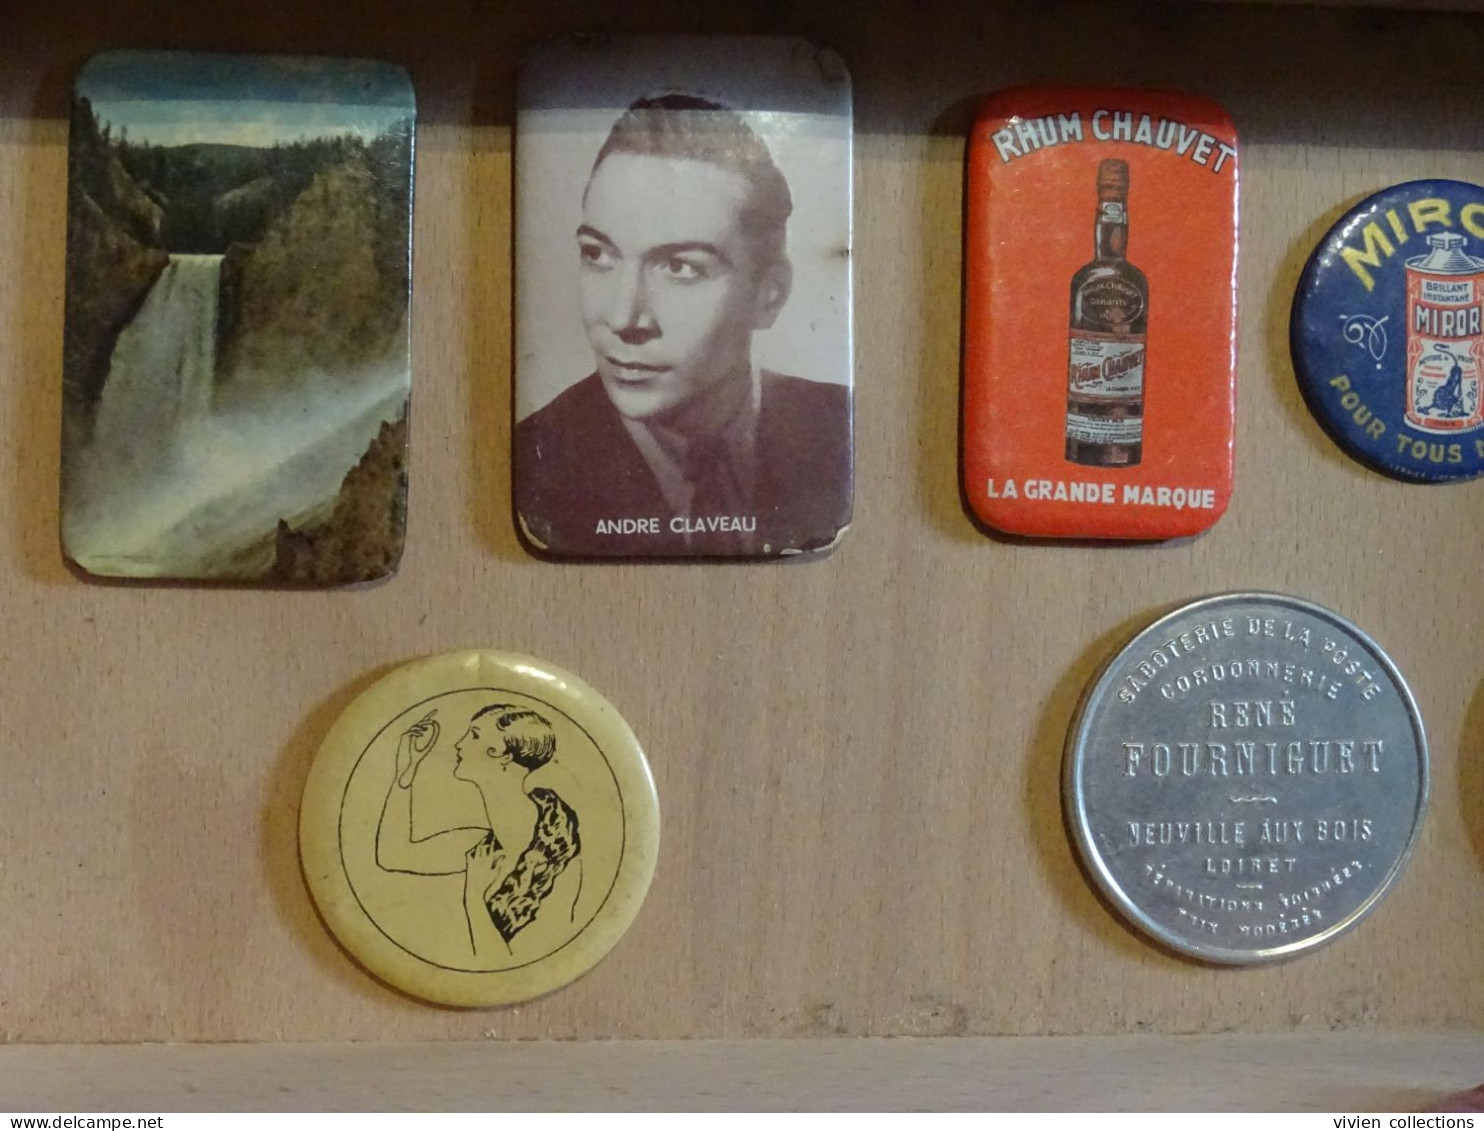 Publicités anciennes 8 miroirs de poches publicitaires Rhum Chauvet, sabotier, Miror, L'Hirondelle, élégante Yellowstone